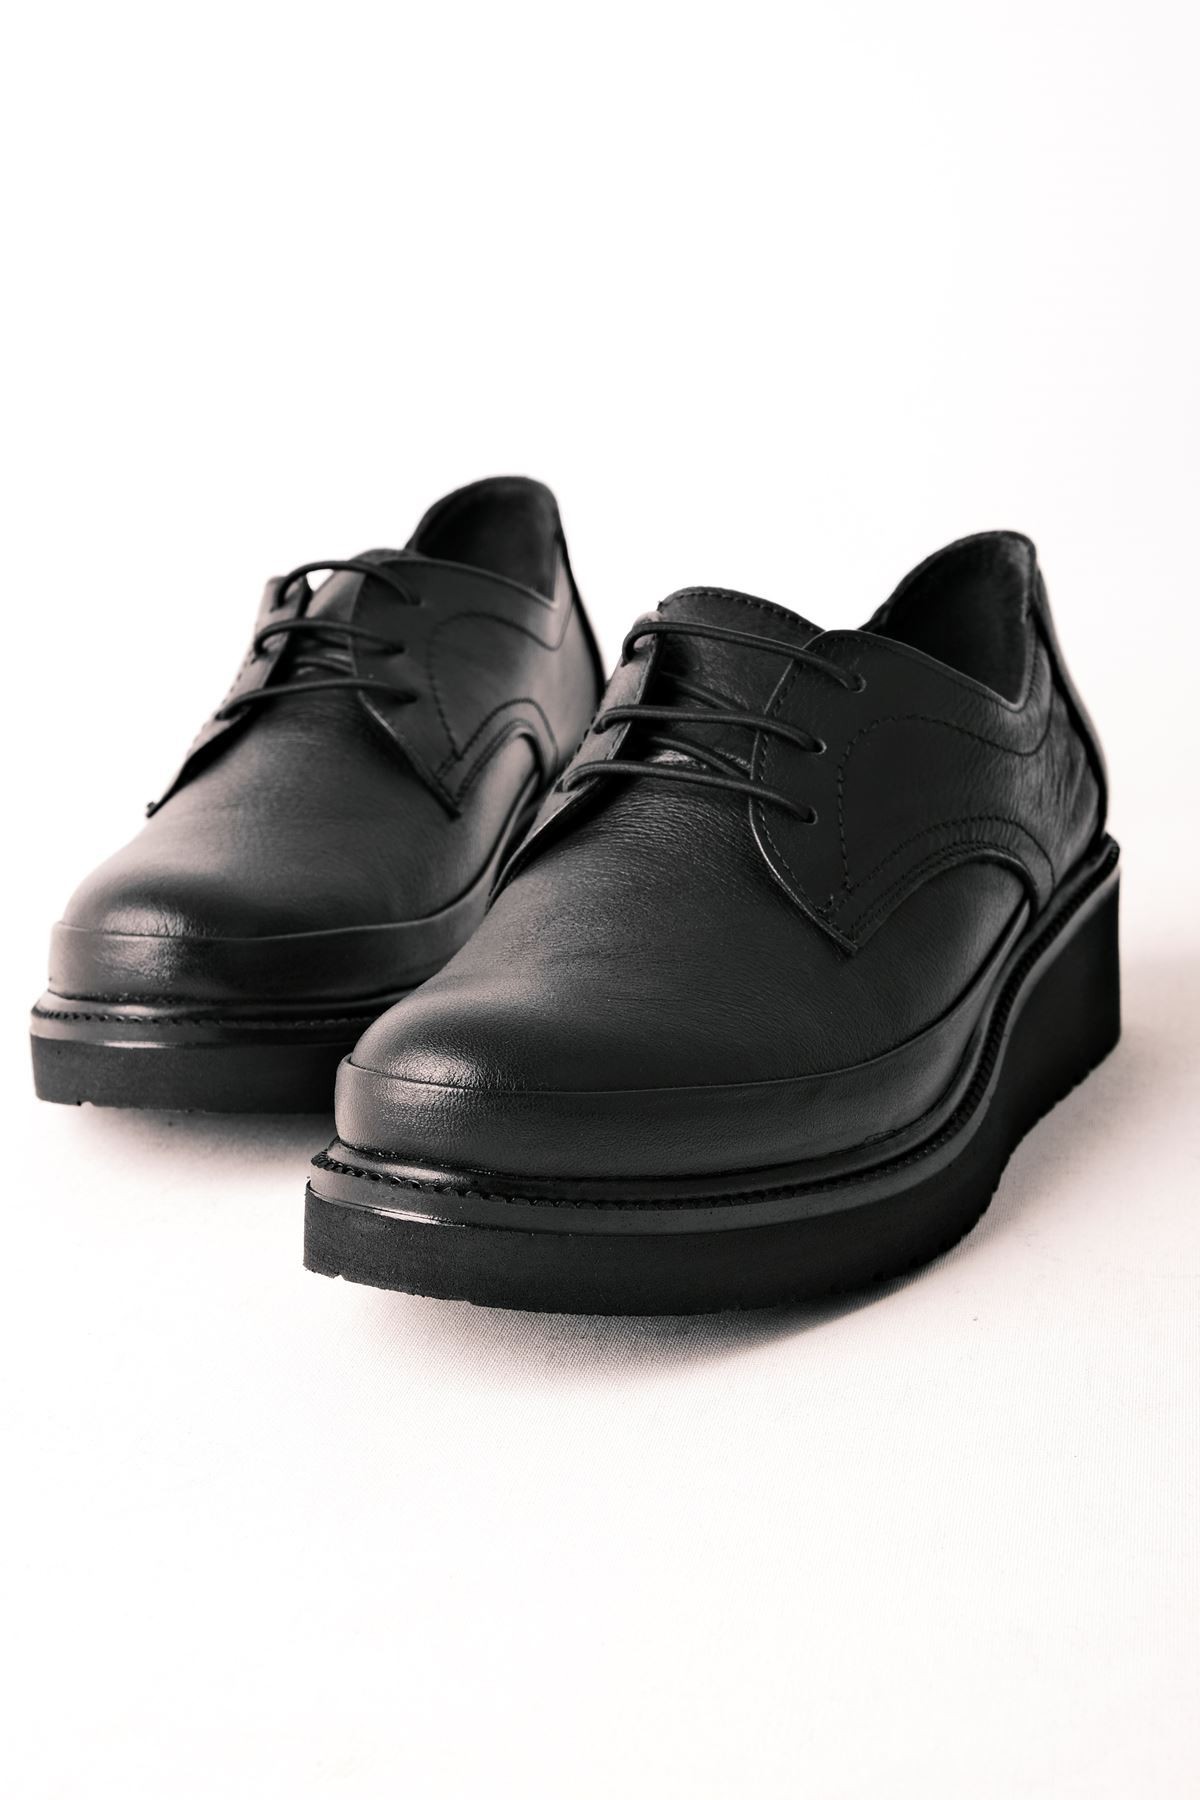 Norio Kadın Hakiki Deri Dikiş Detaylı Bağcıklı Günlük Ayakkabı - Siyah